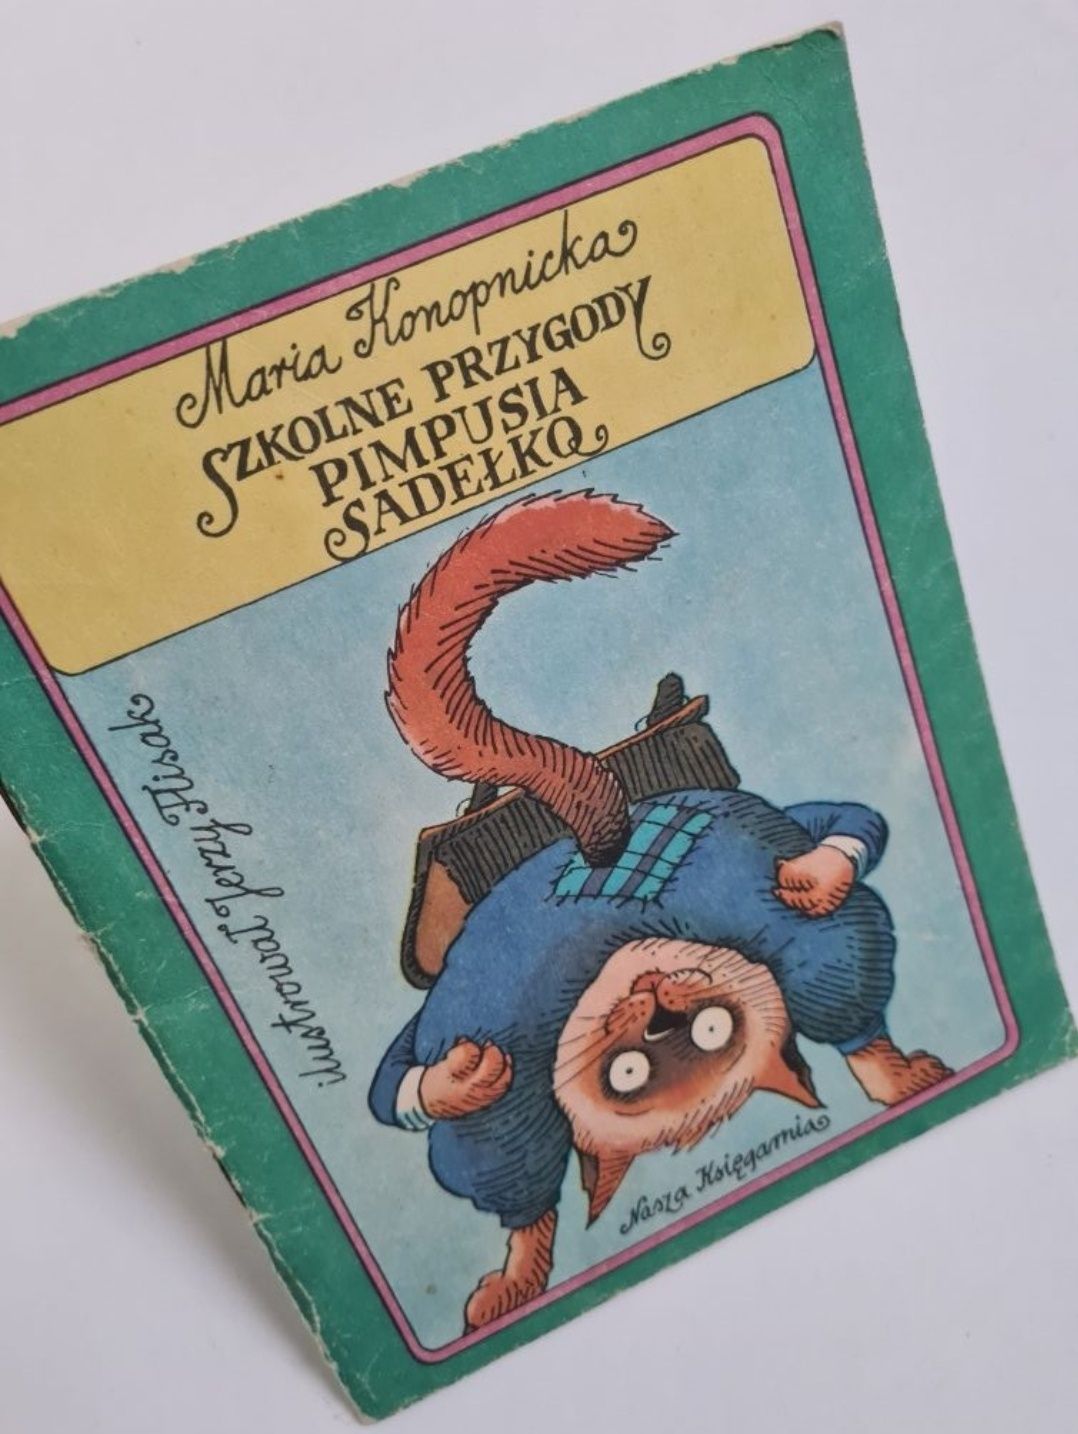 Szkolne przygody Pimpusia Sadełko - Maria Konopnicka